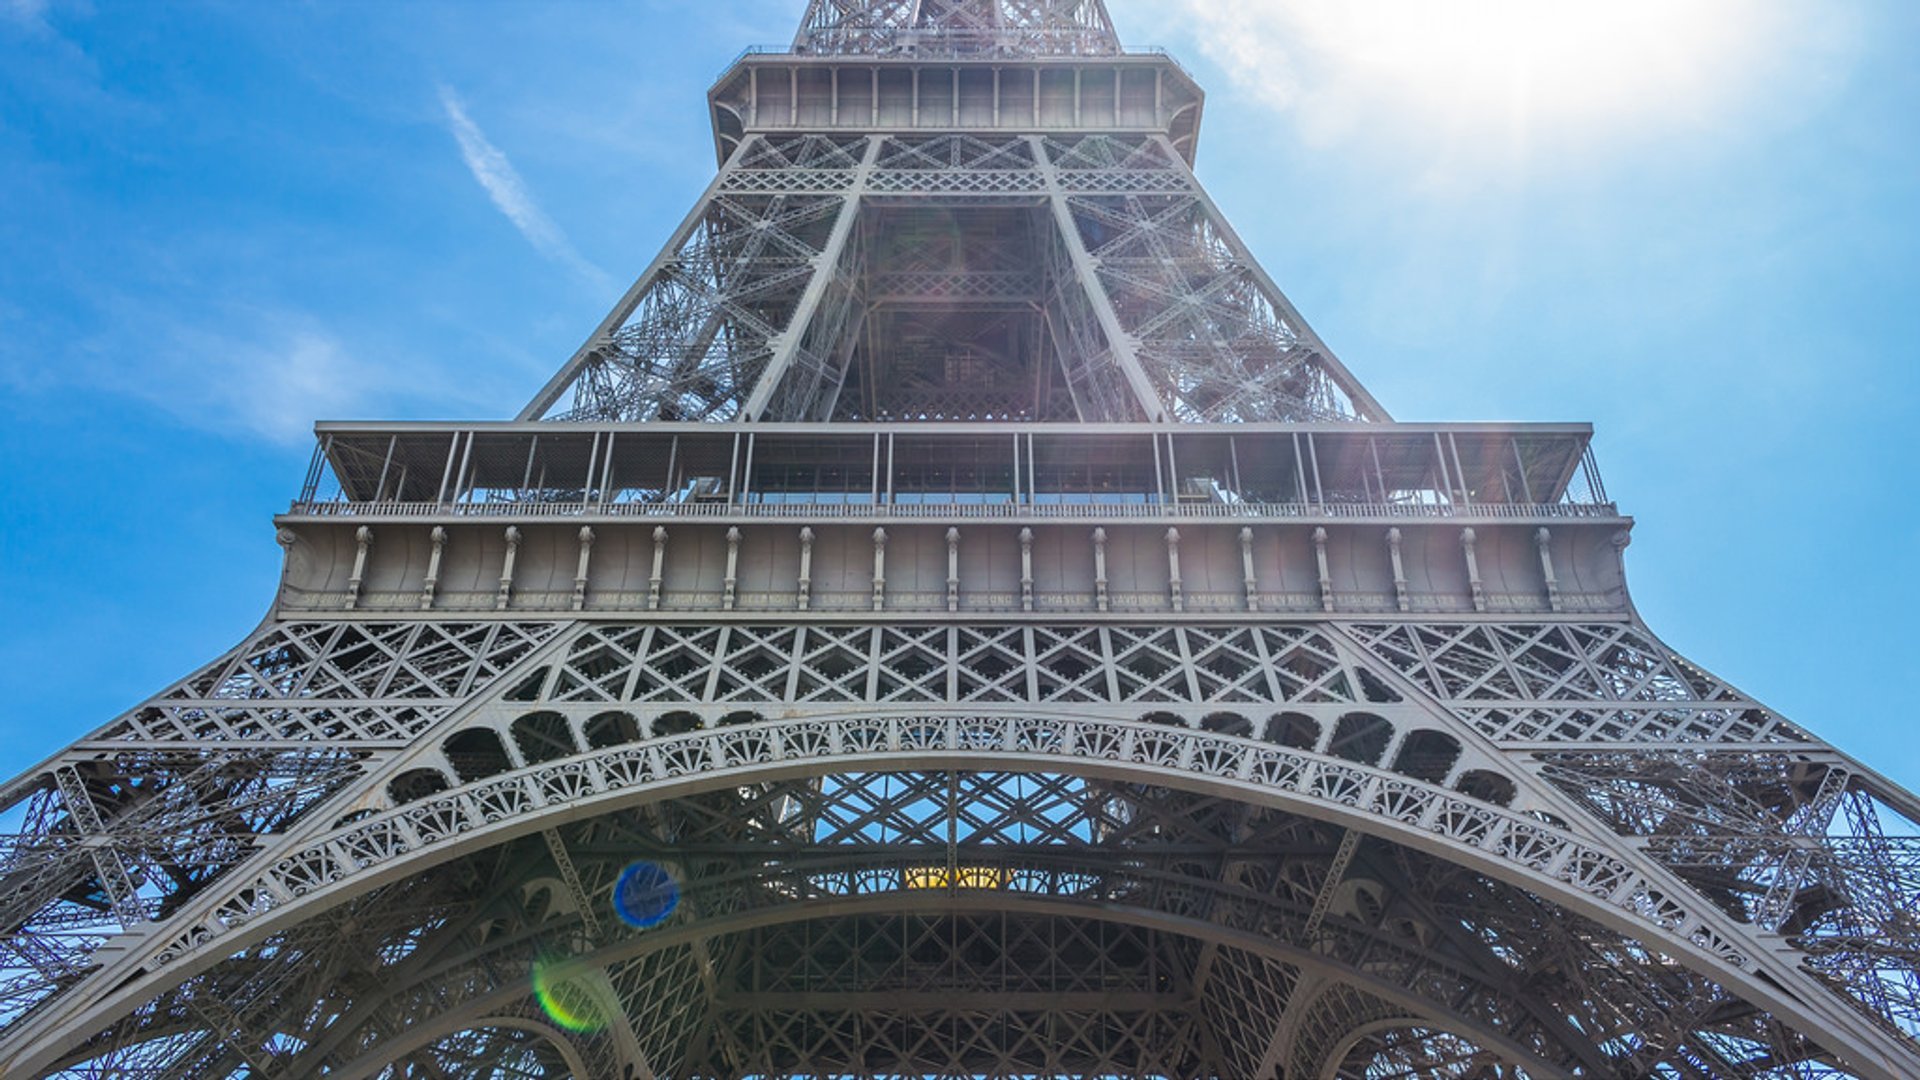 https://images.rove.me/w_1920,q_85/knmh8hr1v11vvkjqqa5n/paris-repainting-the-eiffel-tower.jpg